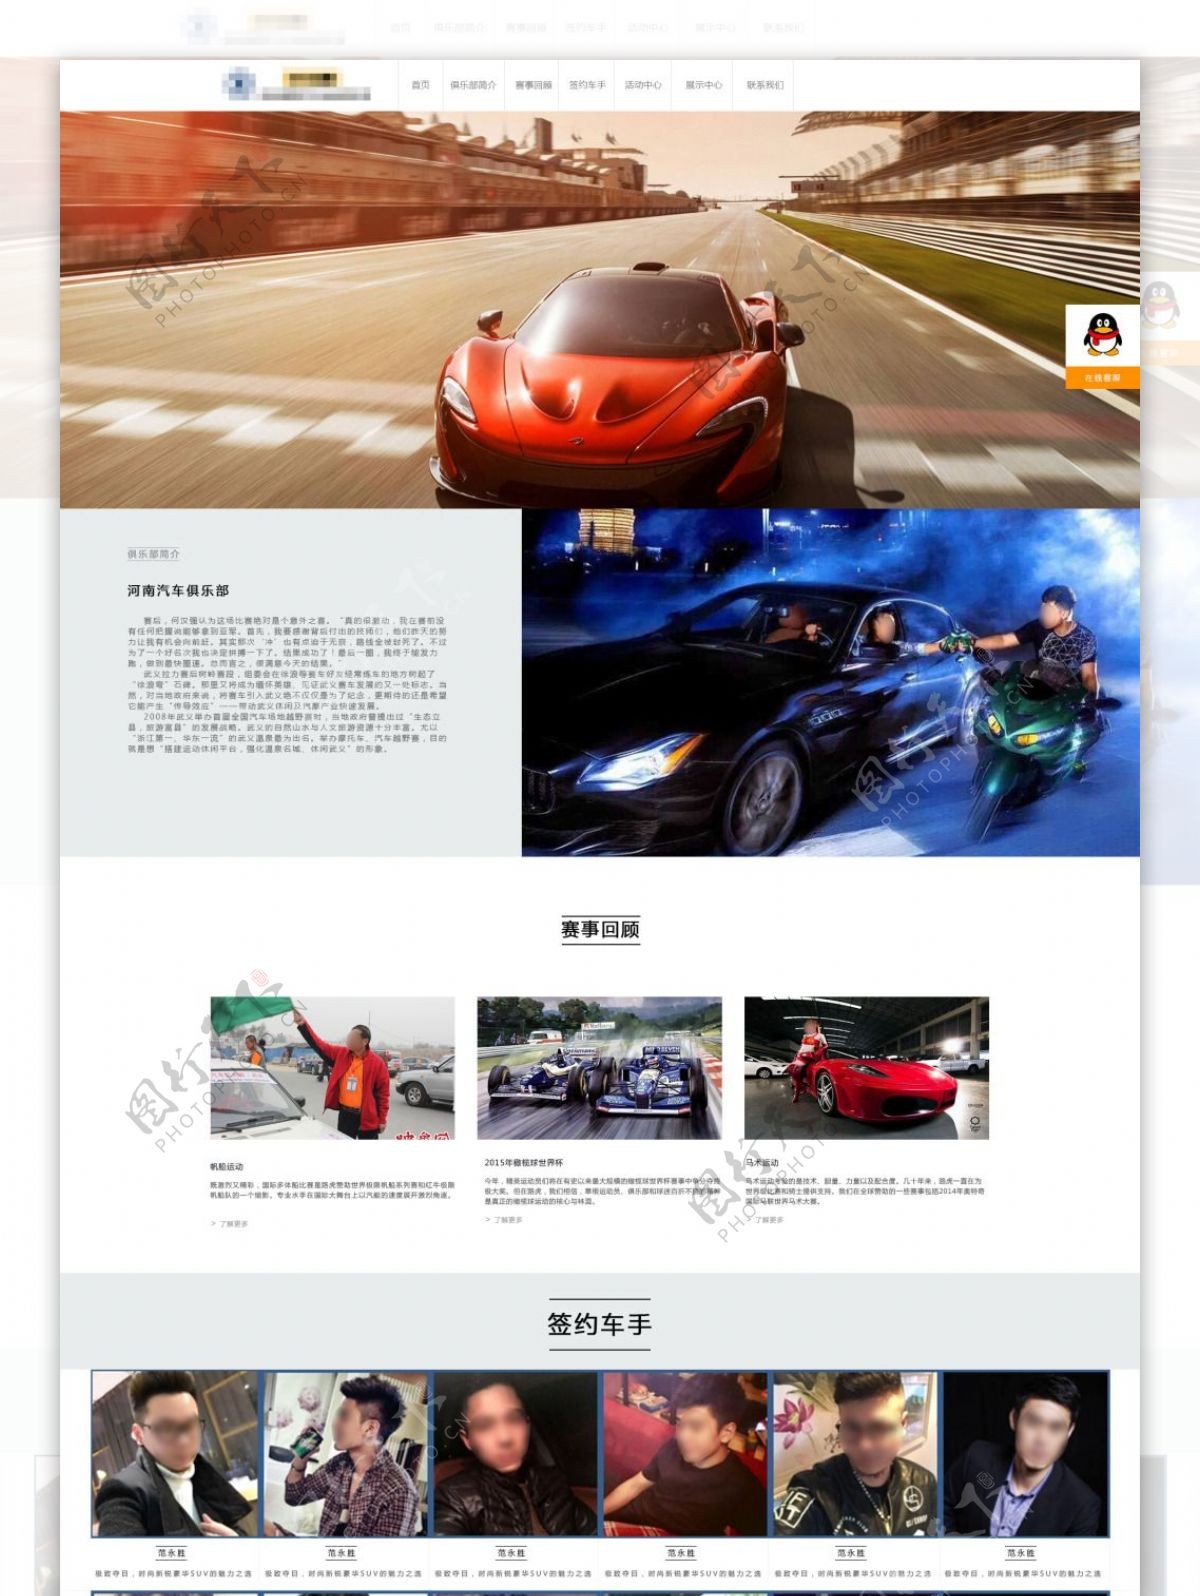 中式汽车俱乐部网页模板psd分层素材